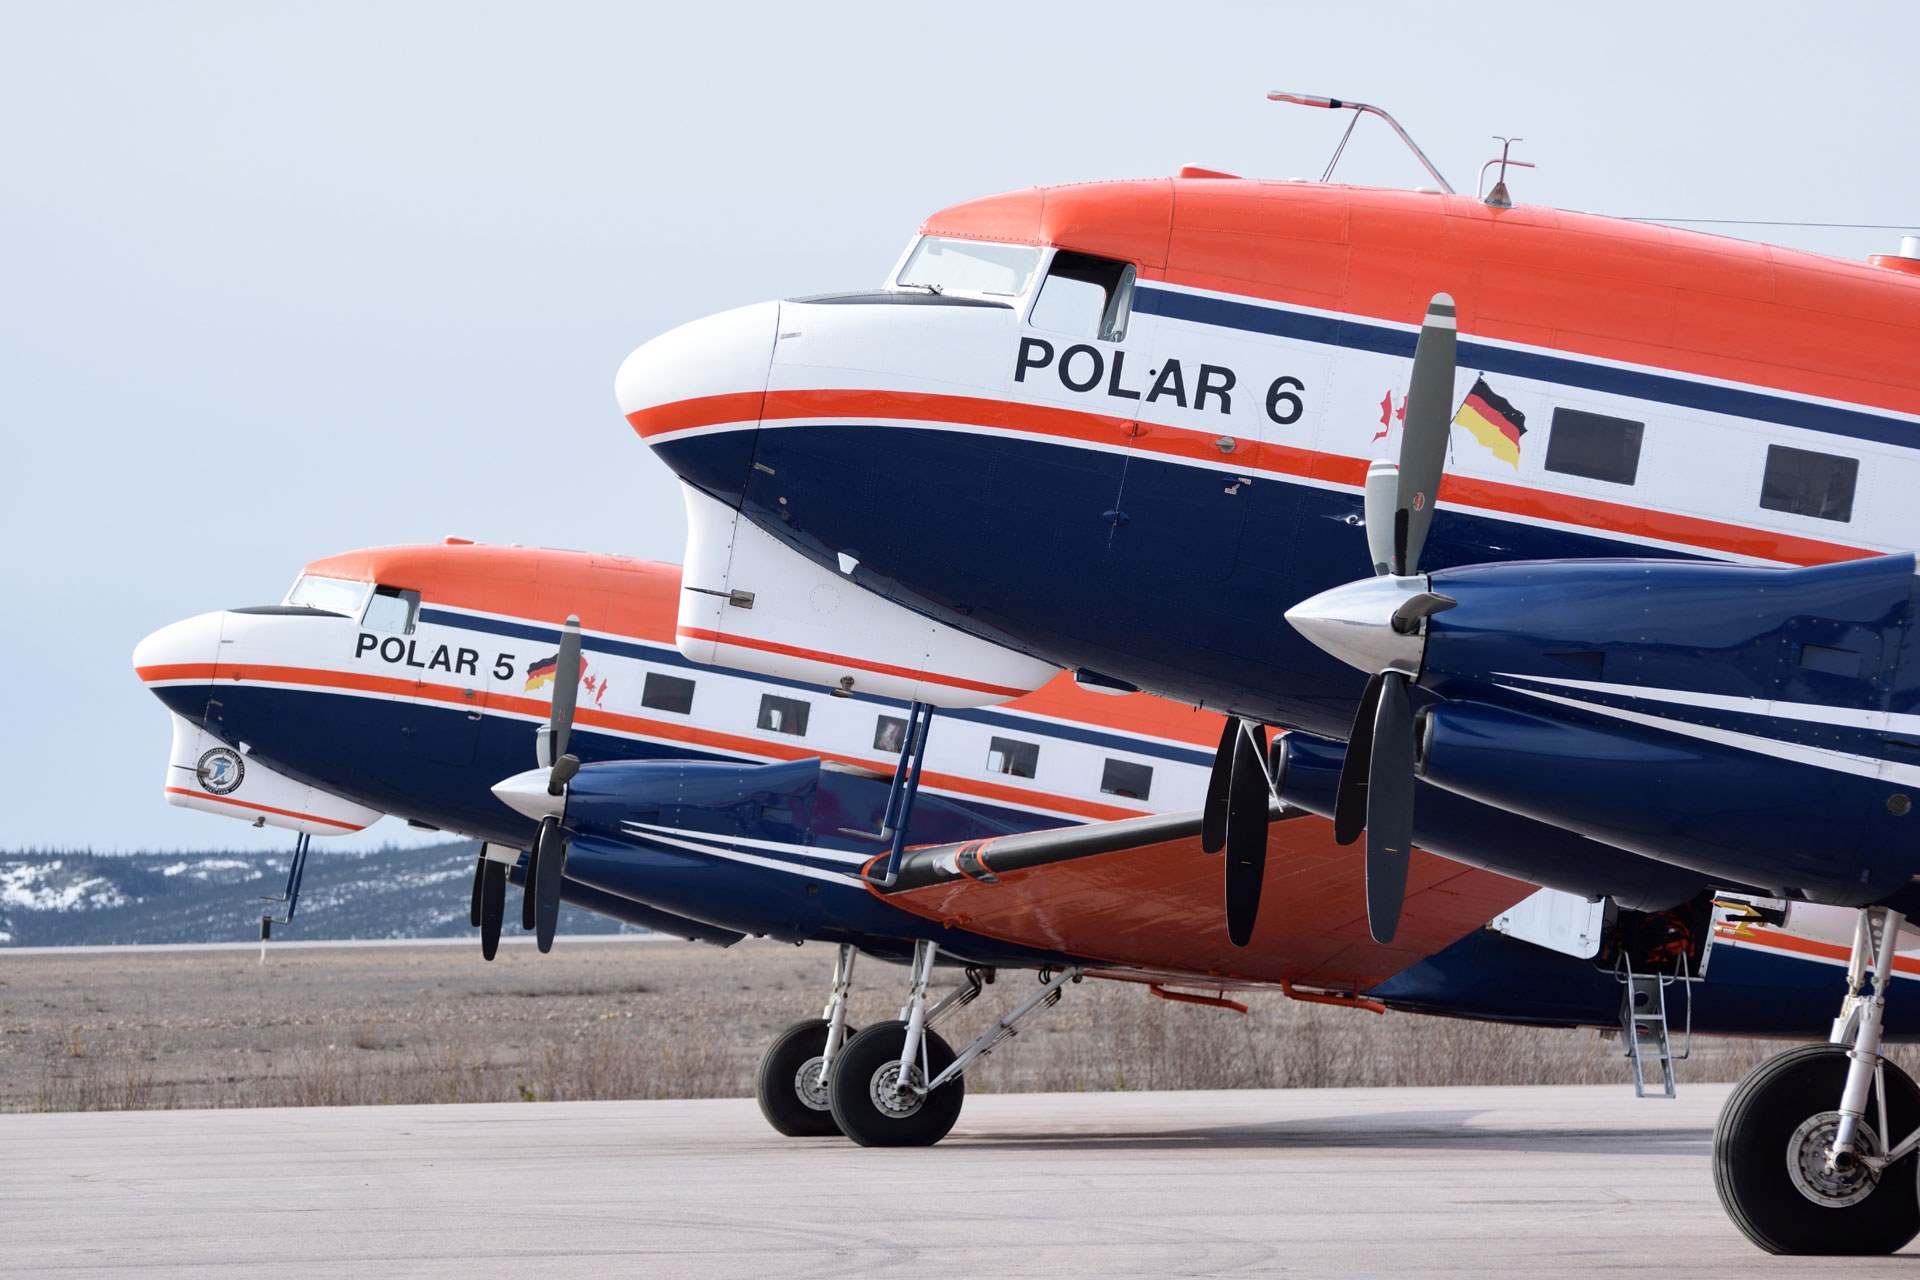 Polar aircraft Polar 5 and Polar 6